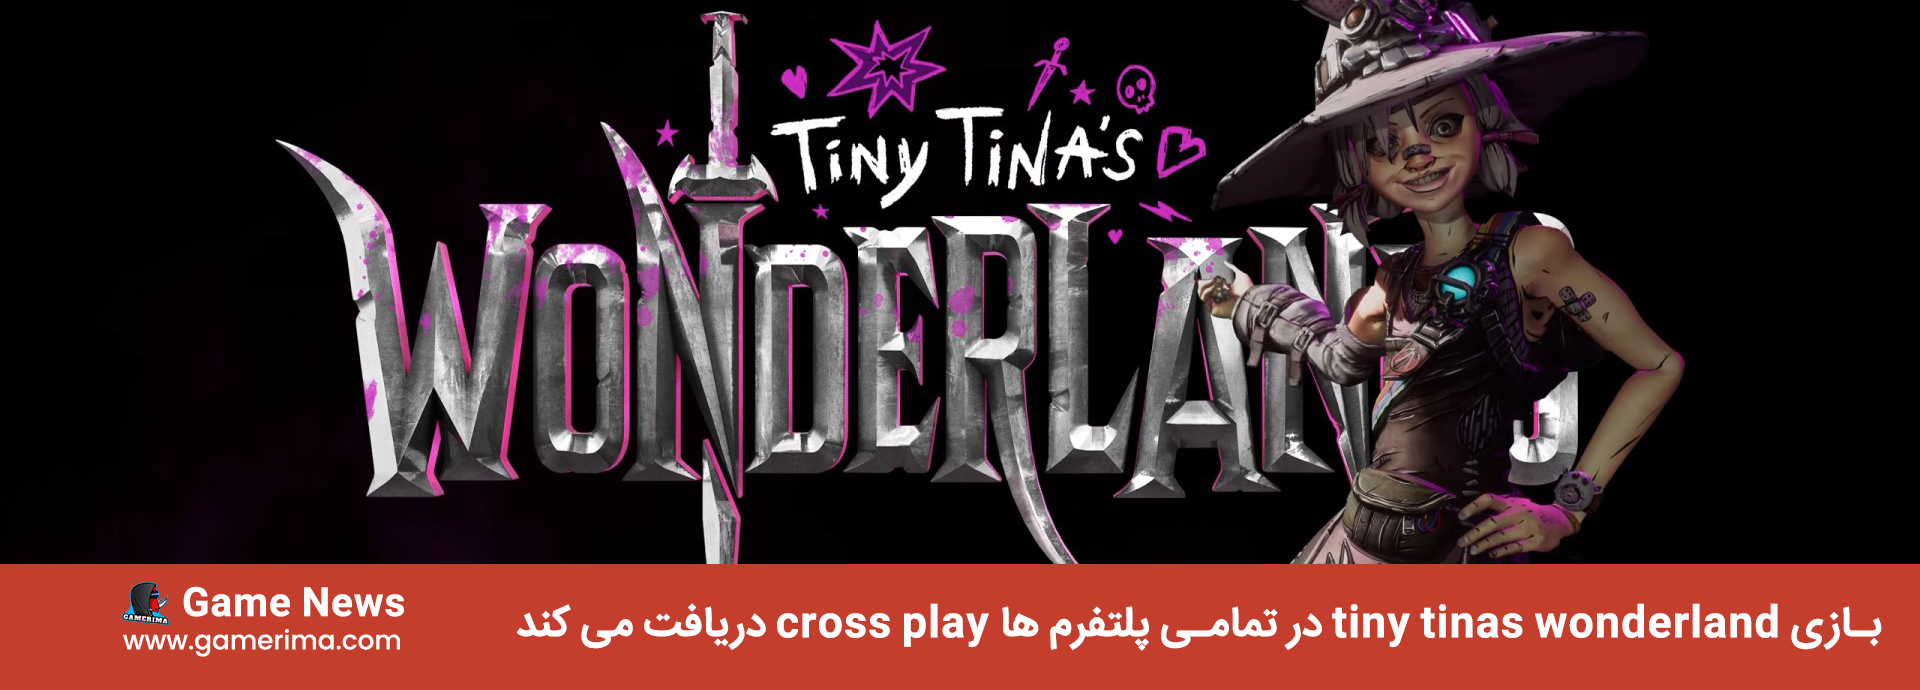 بازی tiny tinas wonderland در تمامی پلتفرم ها cross play دریافت می کند